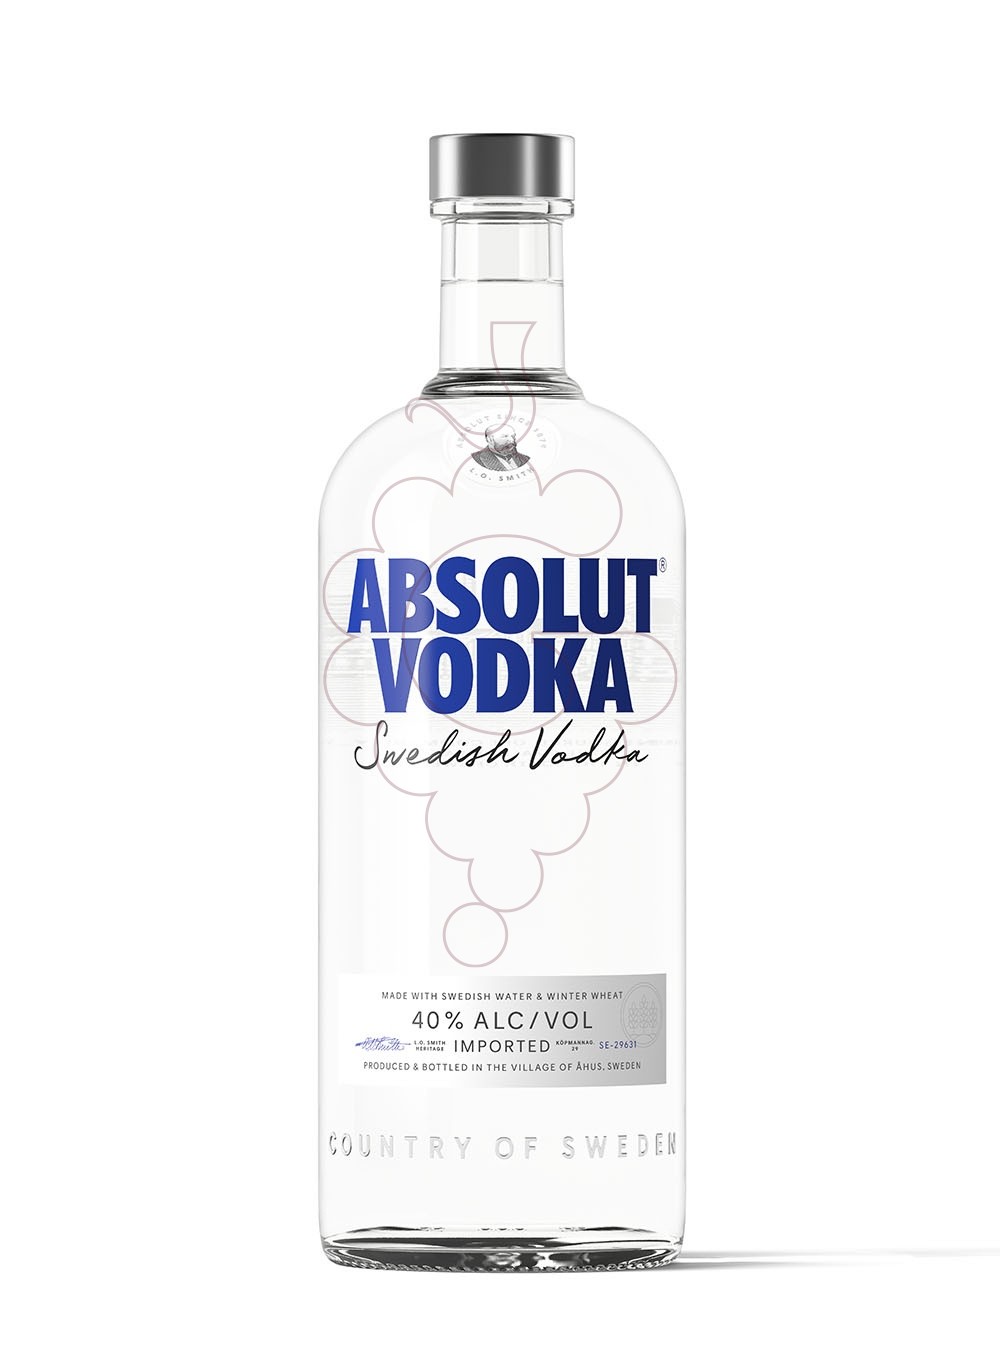 Foto Vodka Absolut rellenable